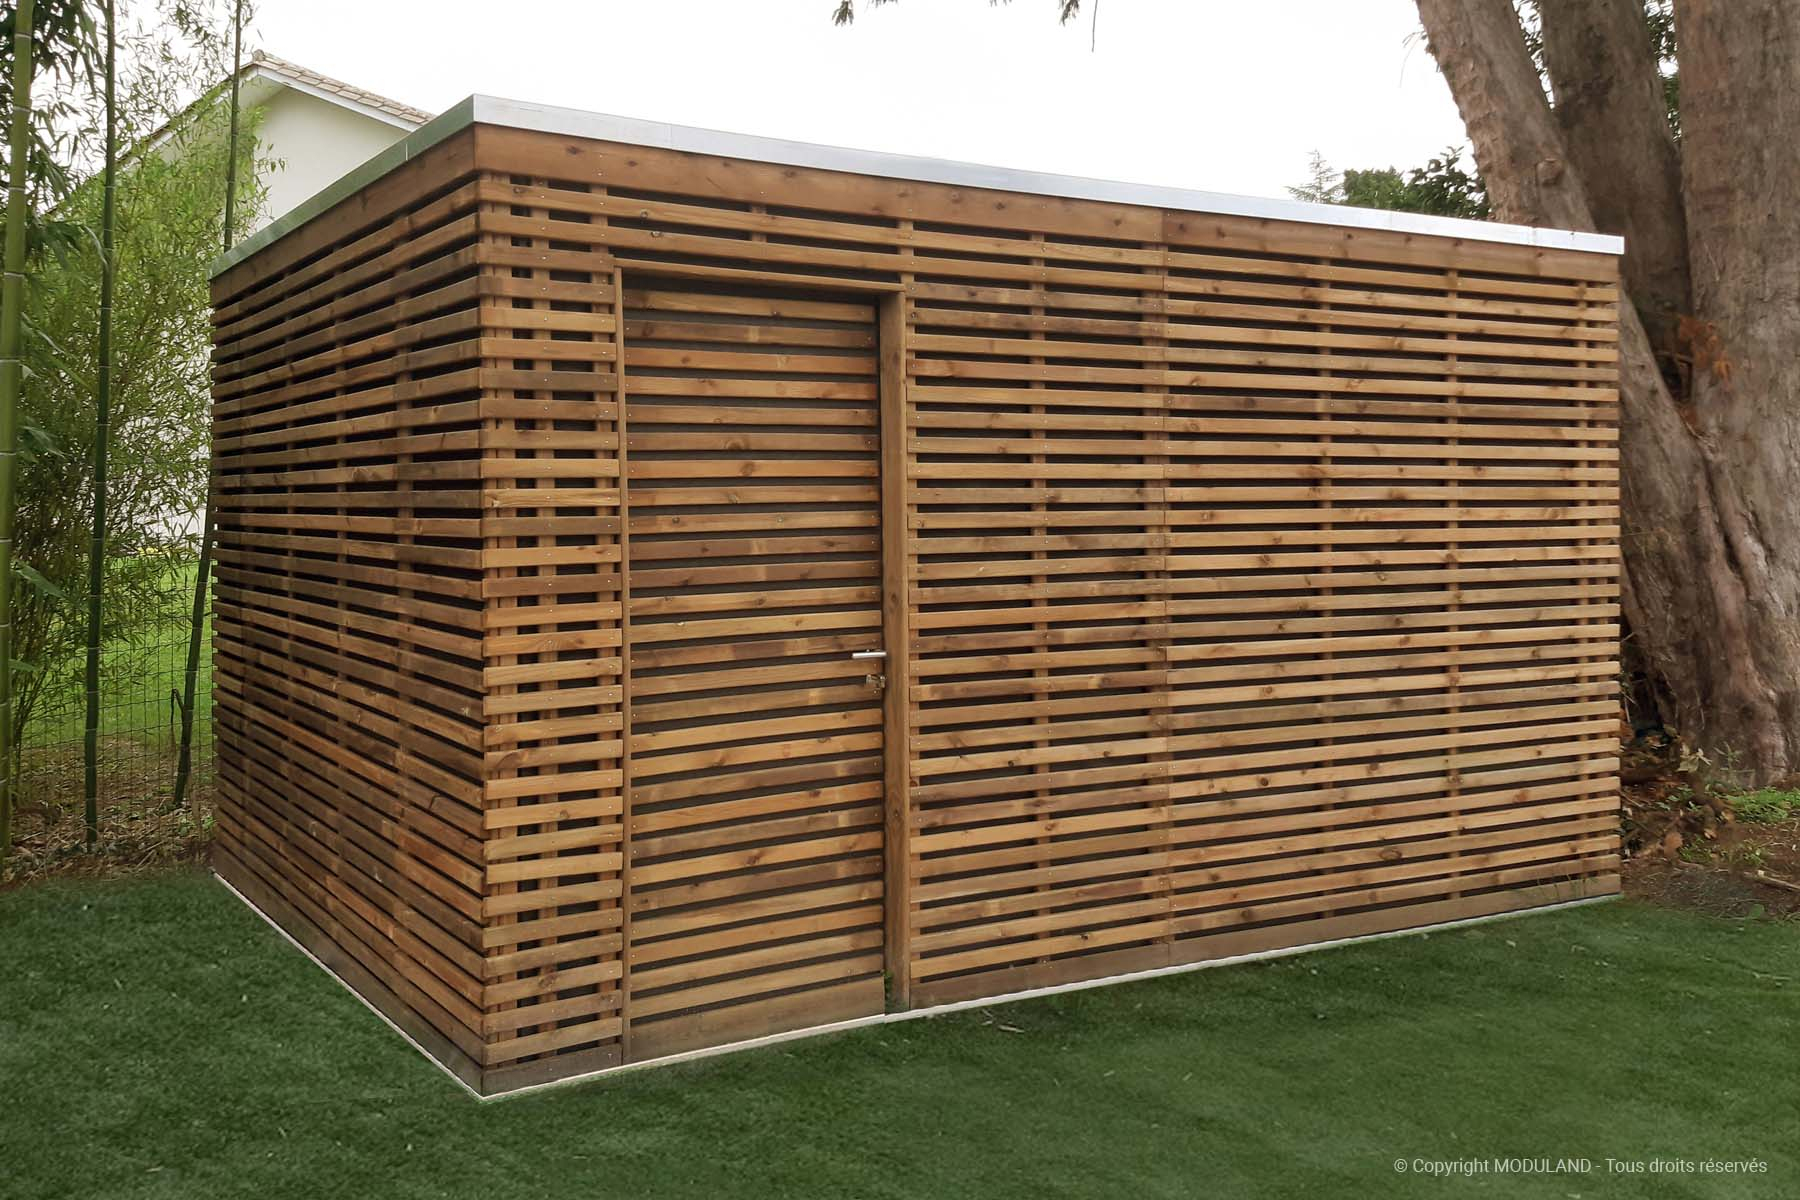 Fabricant D'abris Et Structures Bois Sur Mesure | Moduland intérieur Abri De Jardin Sur Mesure